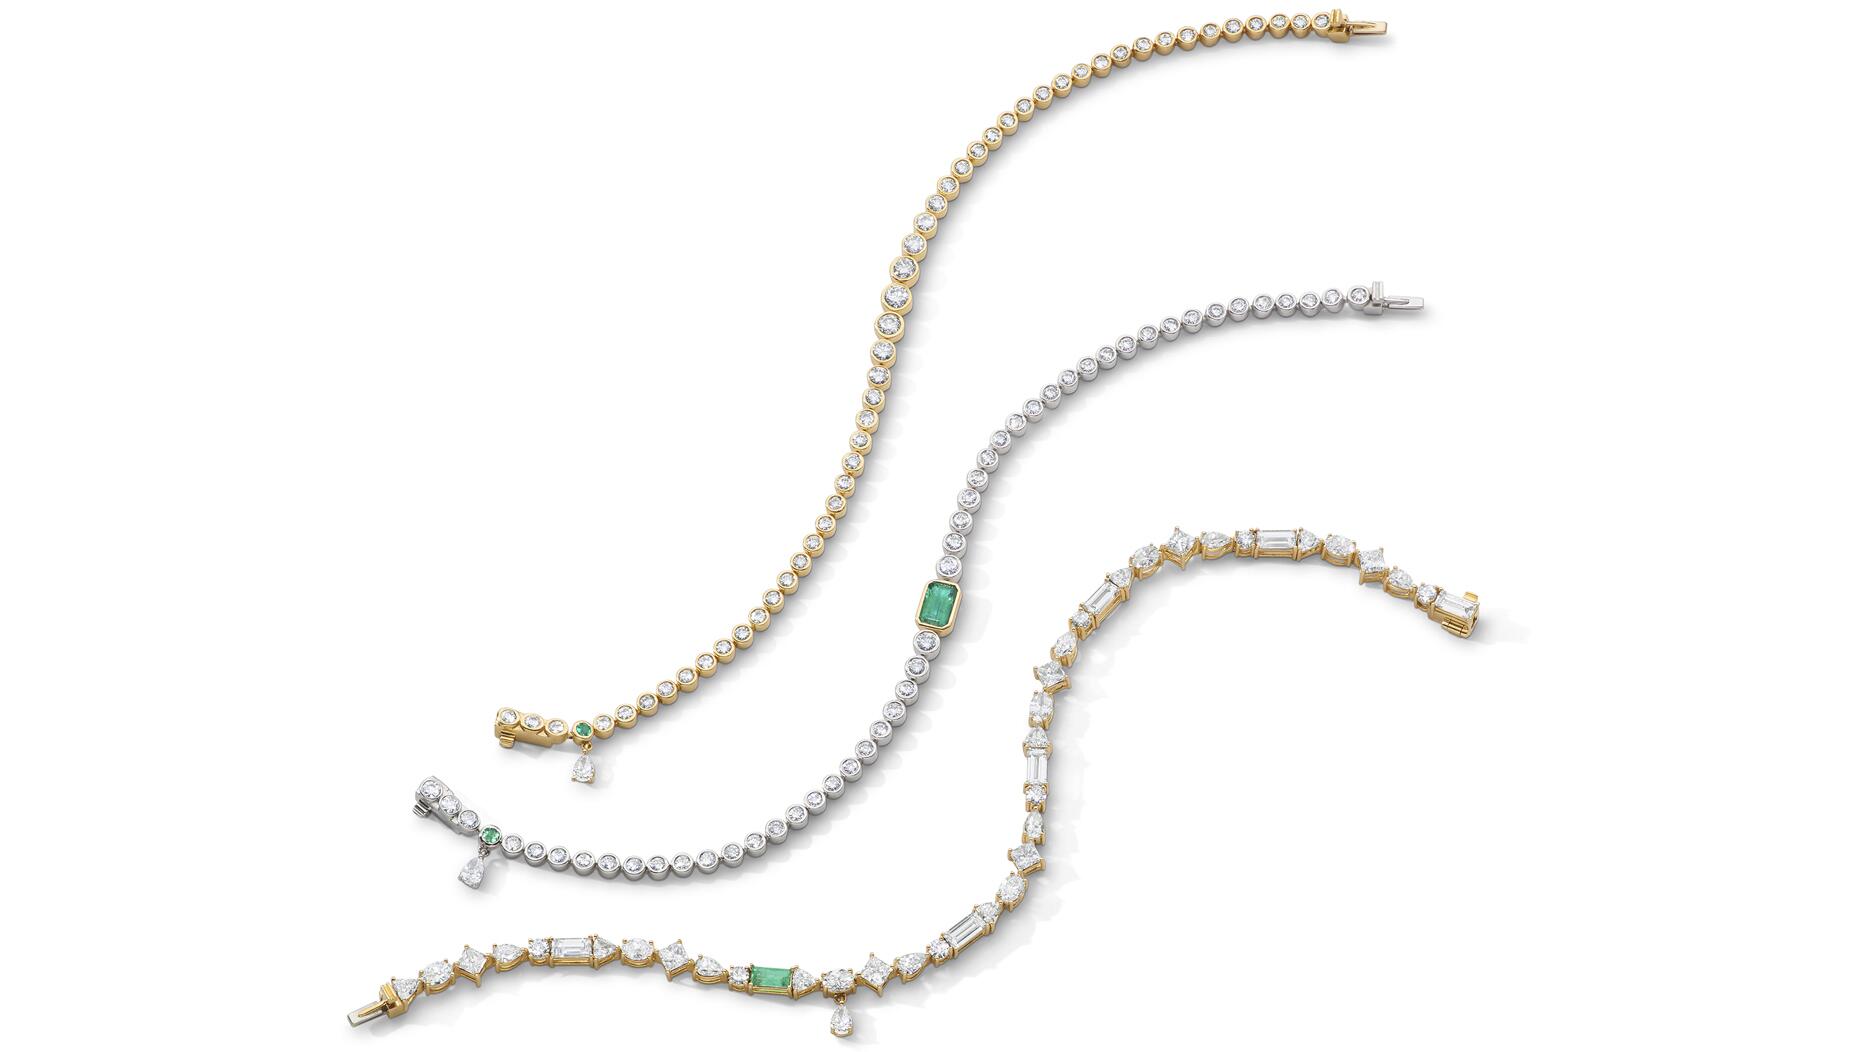 Ruby Jewelry & July Birthstone Jewelry | Blue Nile